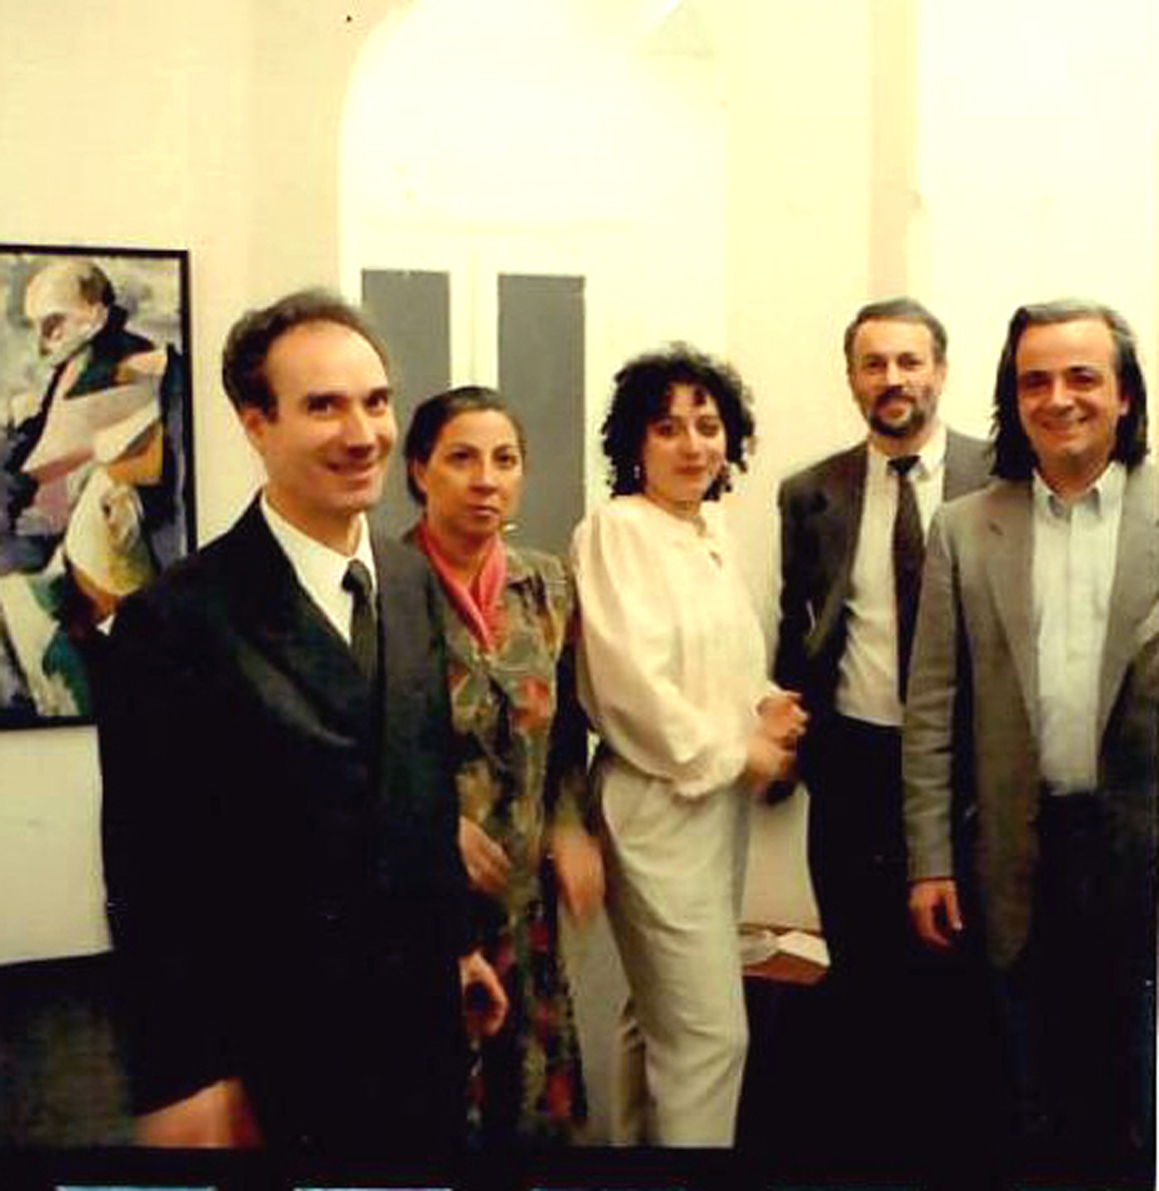 1993 - Personale, 'Polarità di Conflitti', Gladys Sica, nella foto con il gallerista Giovanni Billari e sua moglie Vera, i critici Giuseppe Possa e Gianni Pre.